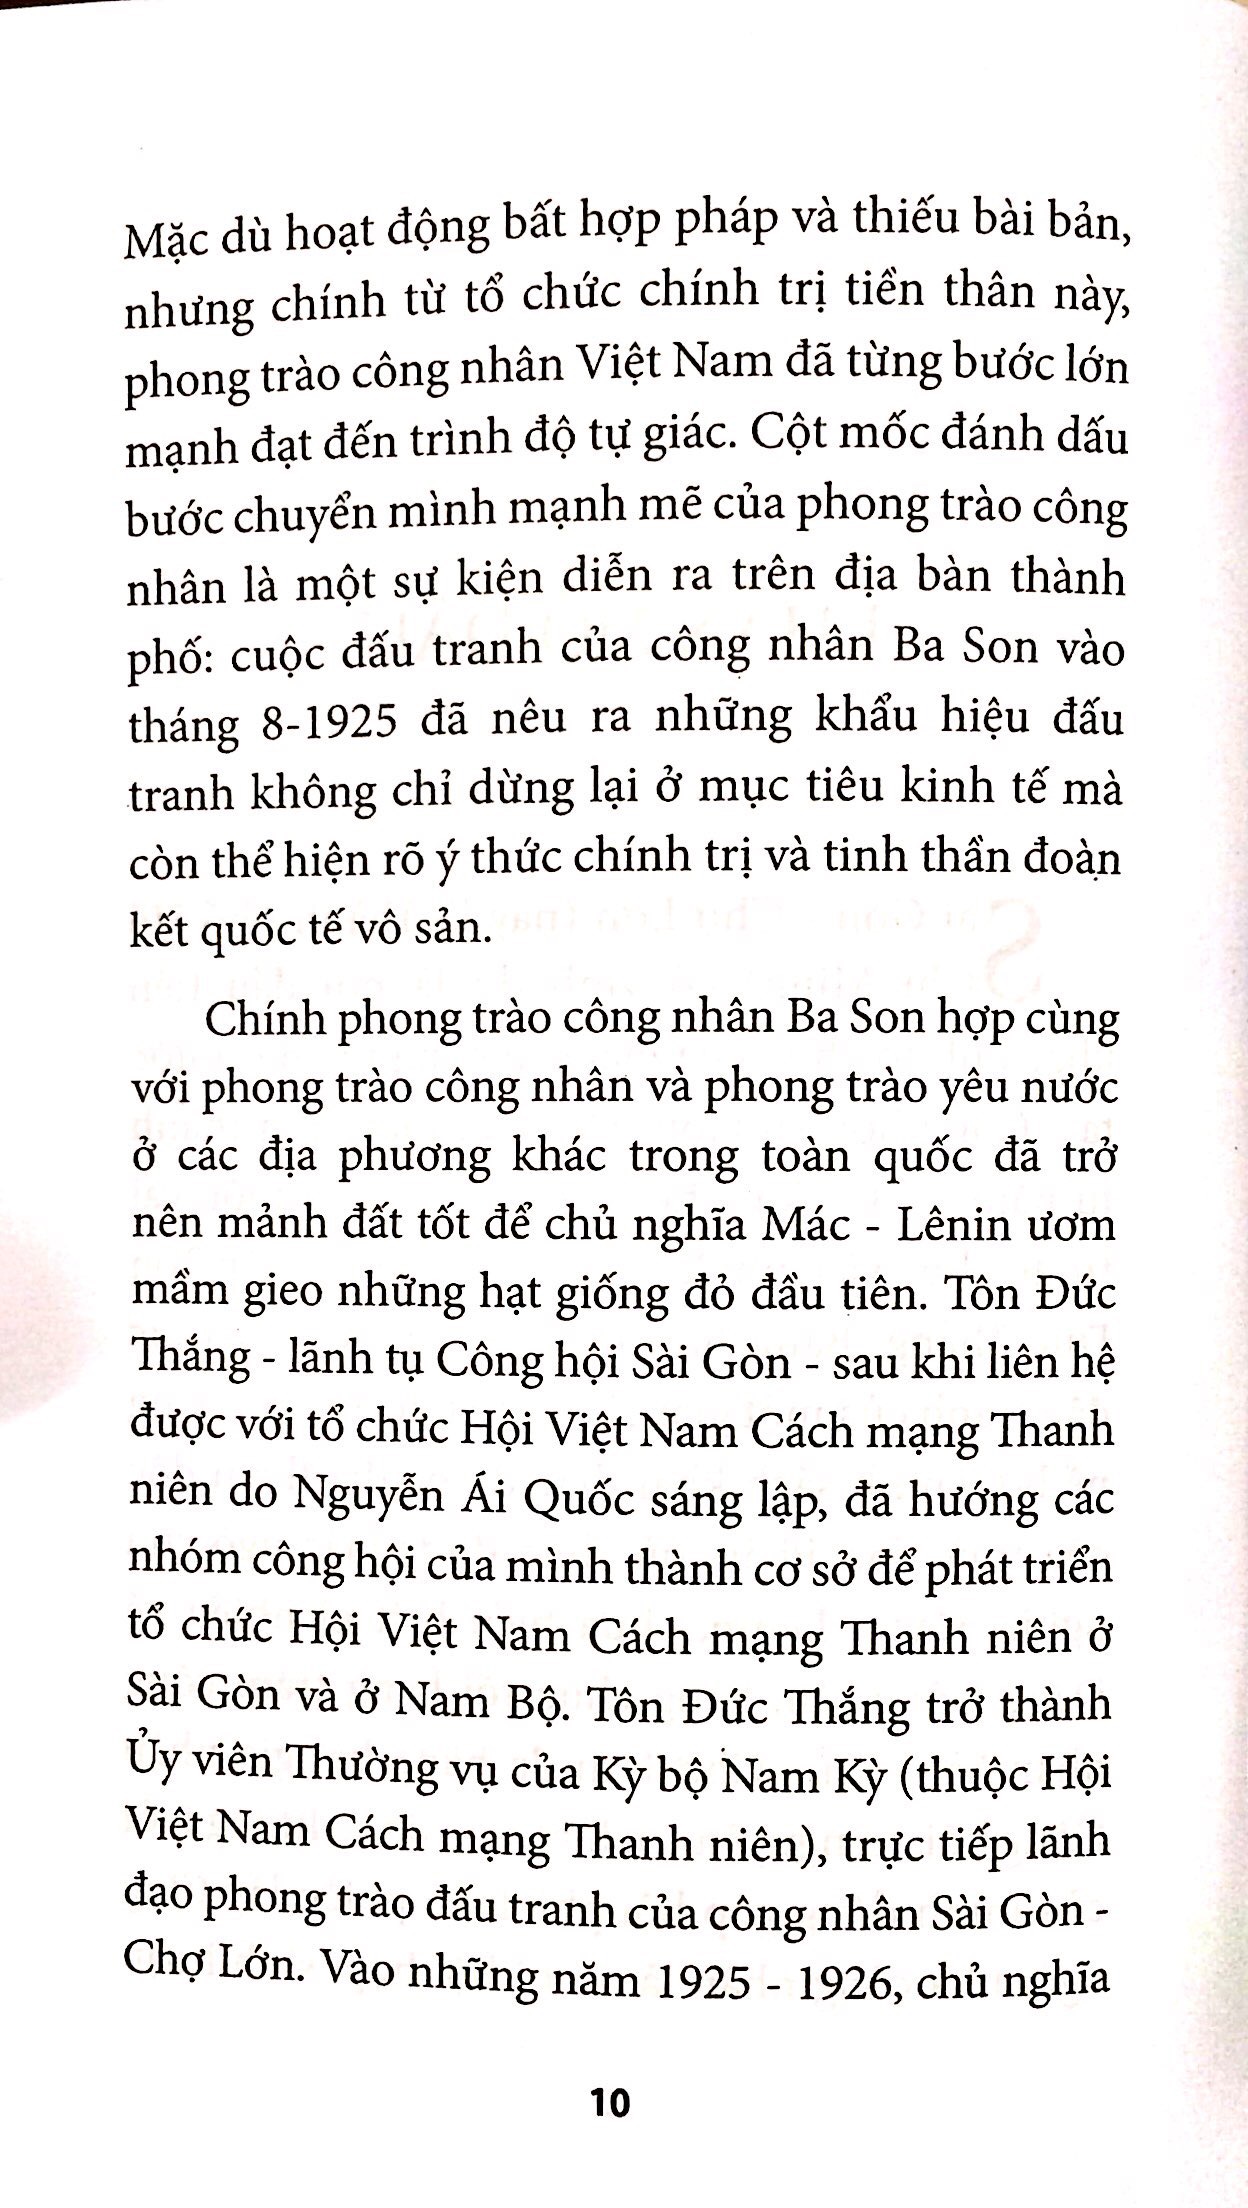 Tôn Đức Thắng Với Phong Trào Công Nhân Sài Gòn Đầu Thế Kỷ Xx Đến Năm 1930 PDF